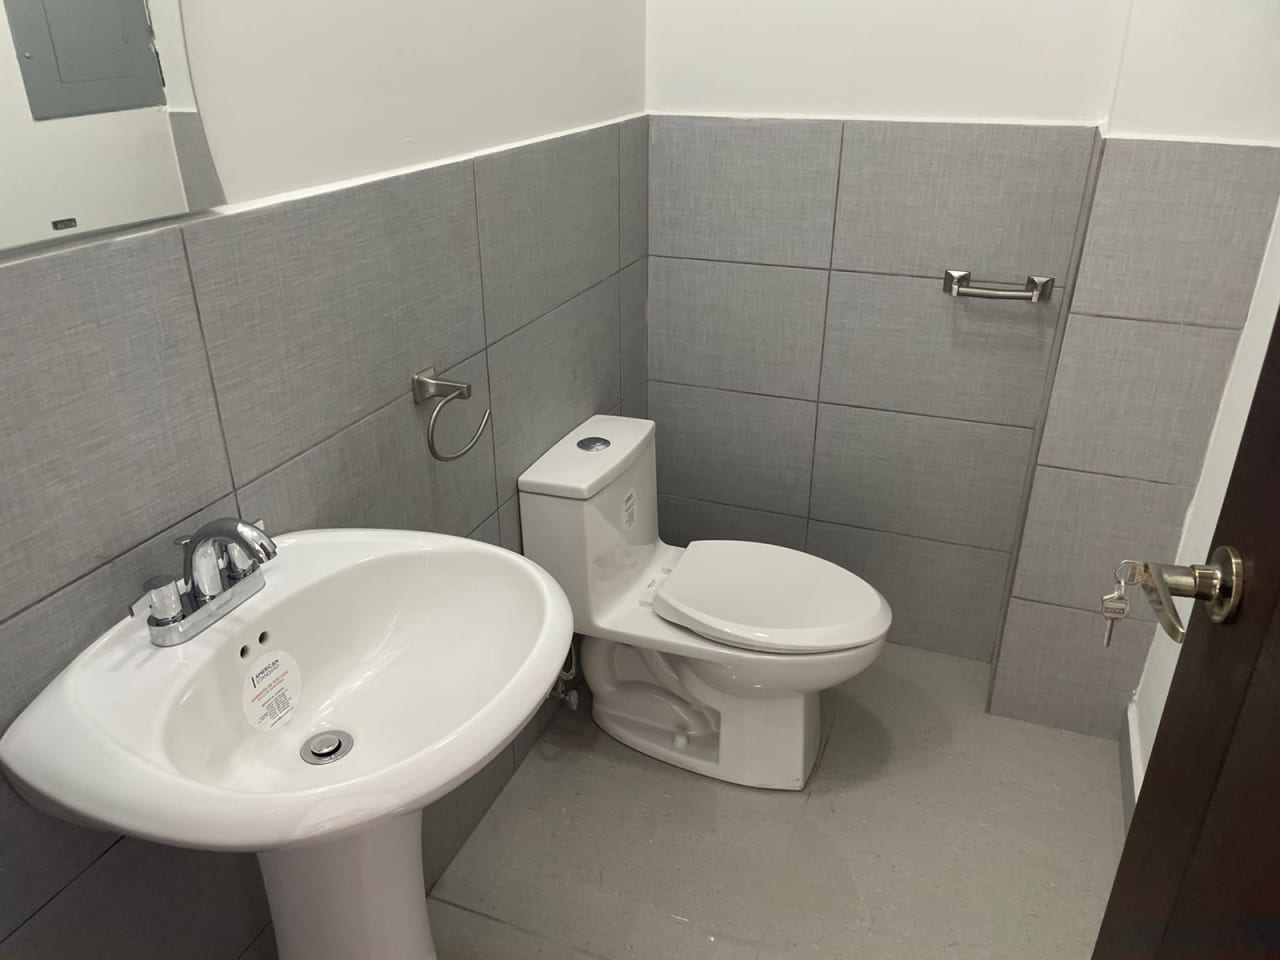 Moderna oficina en venta y renta, cuenta con baño privado.